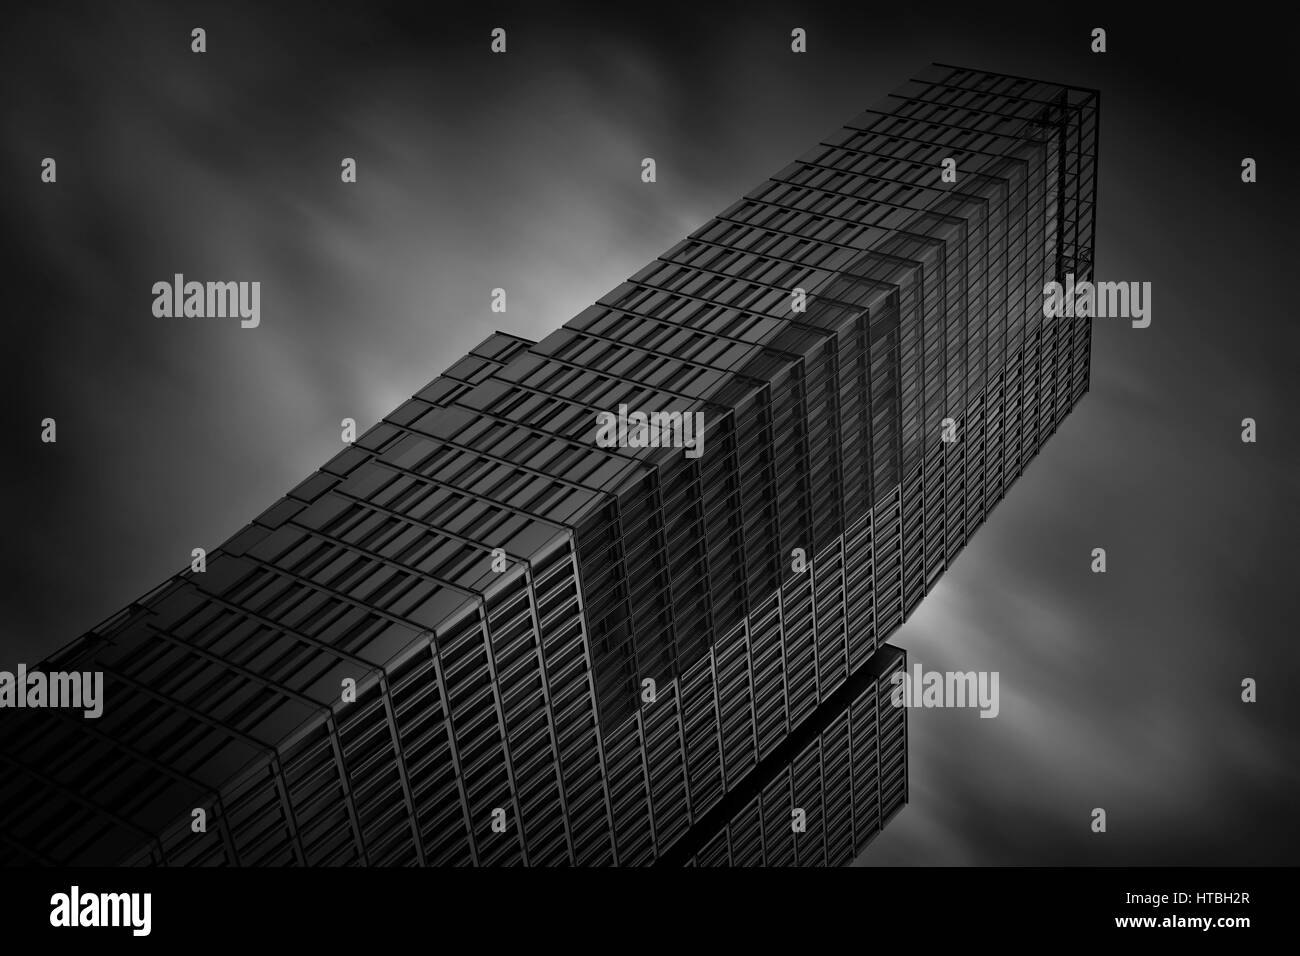 Capture en noir et blanc de l'Nextower building à Frankfurt am Main, Allemagne Banque D'Images